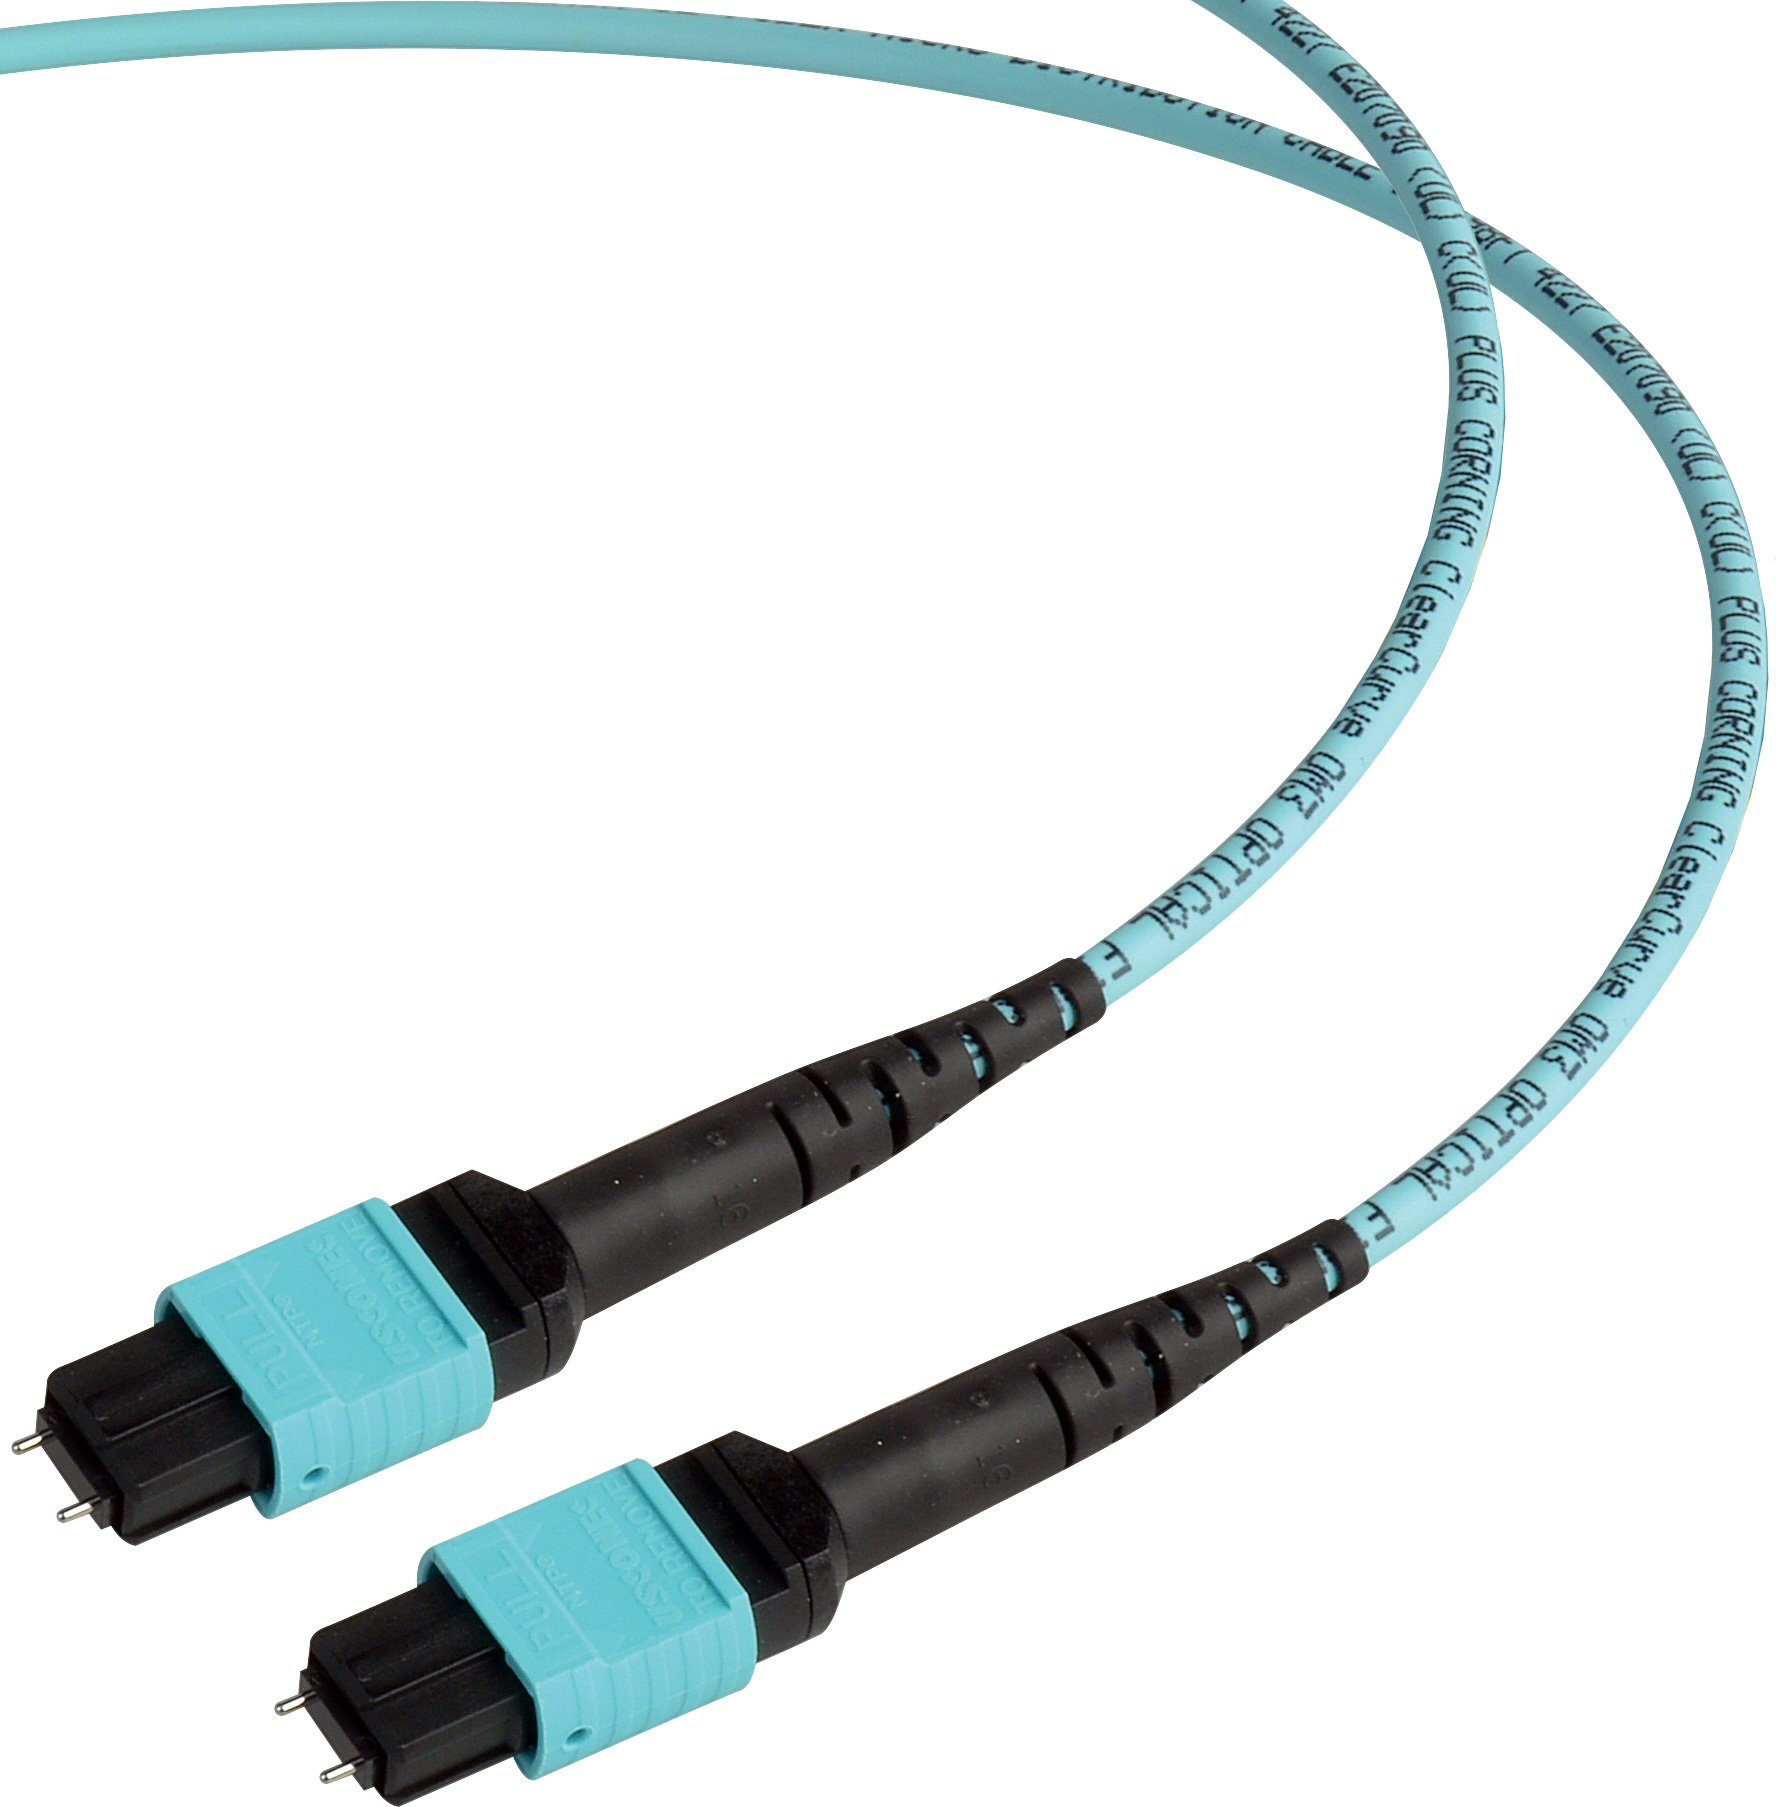 MTP MPO Fiber Optic Cables